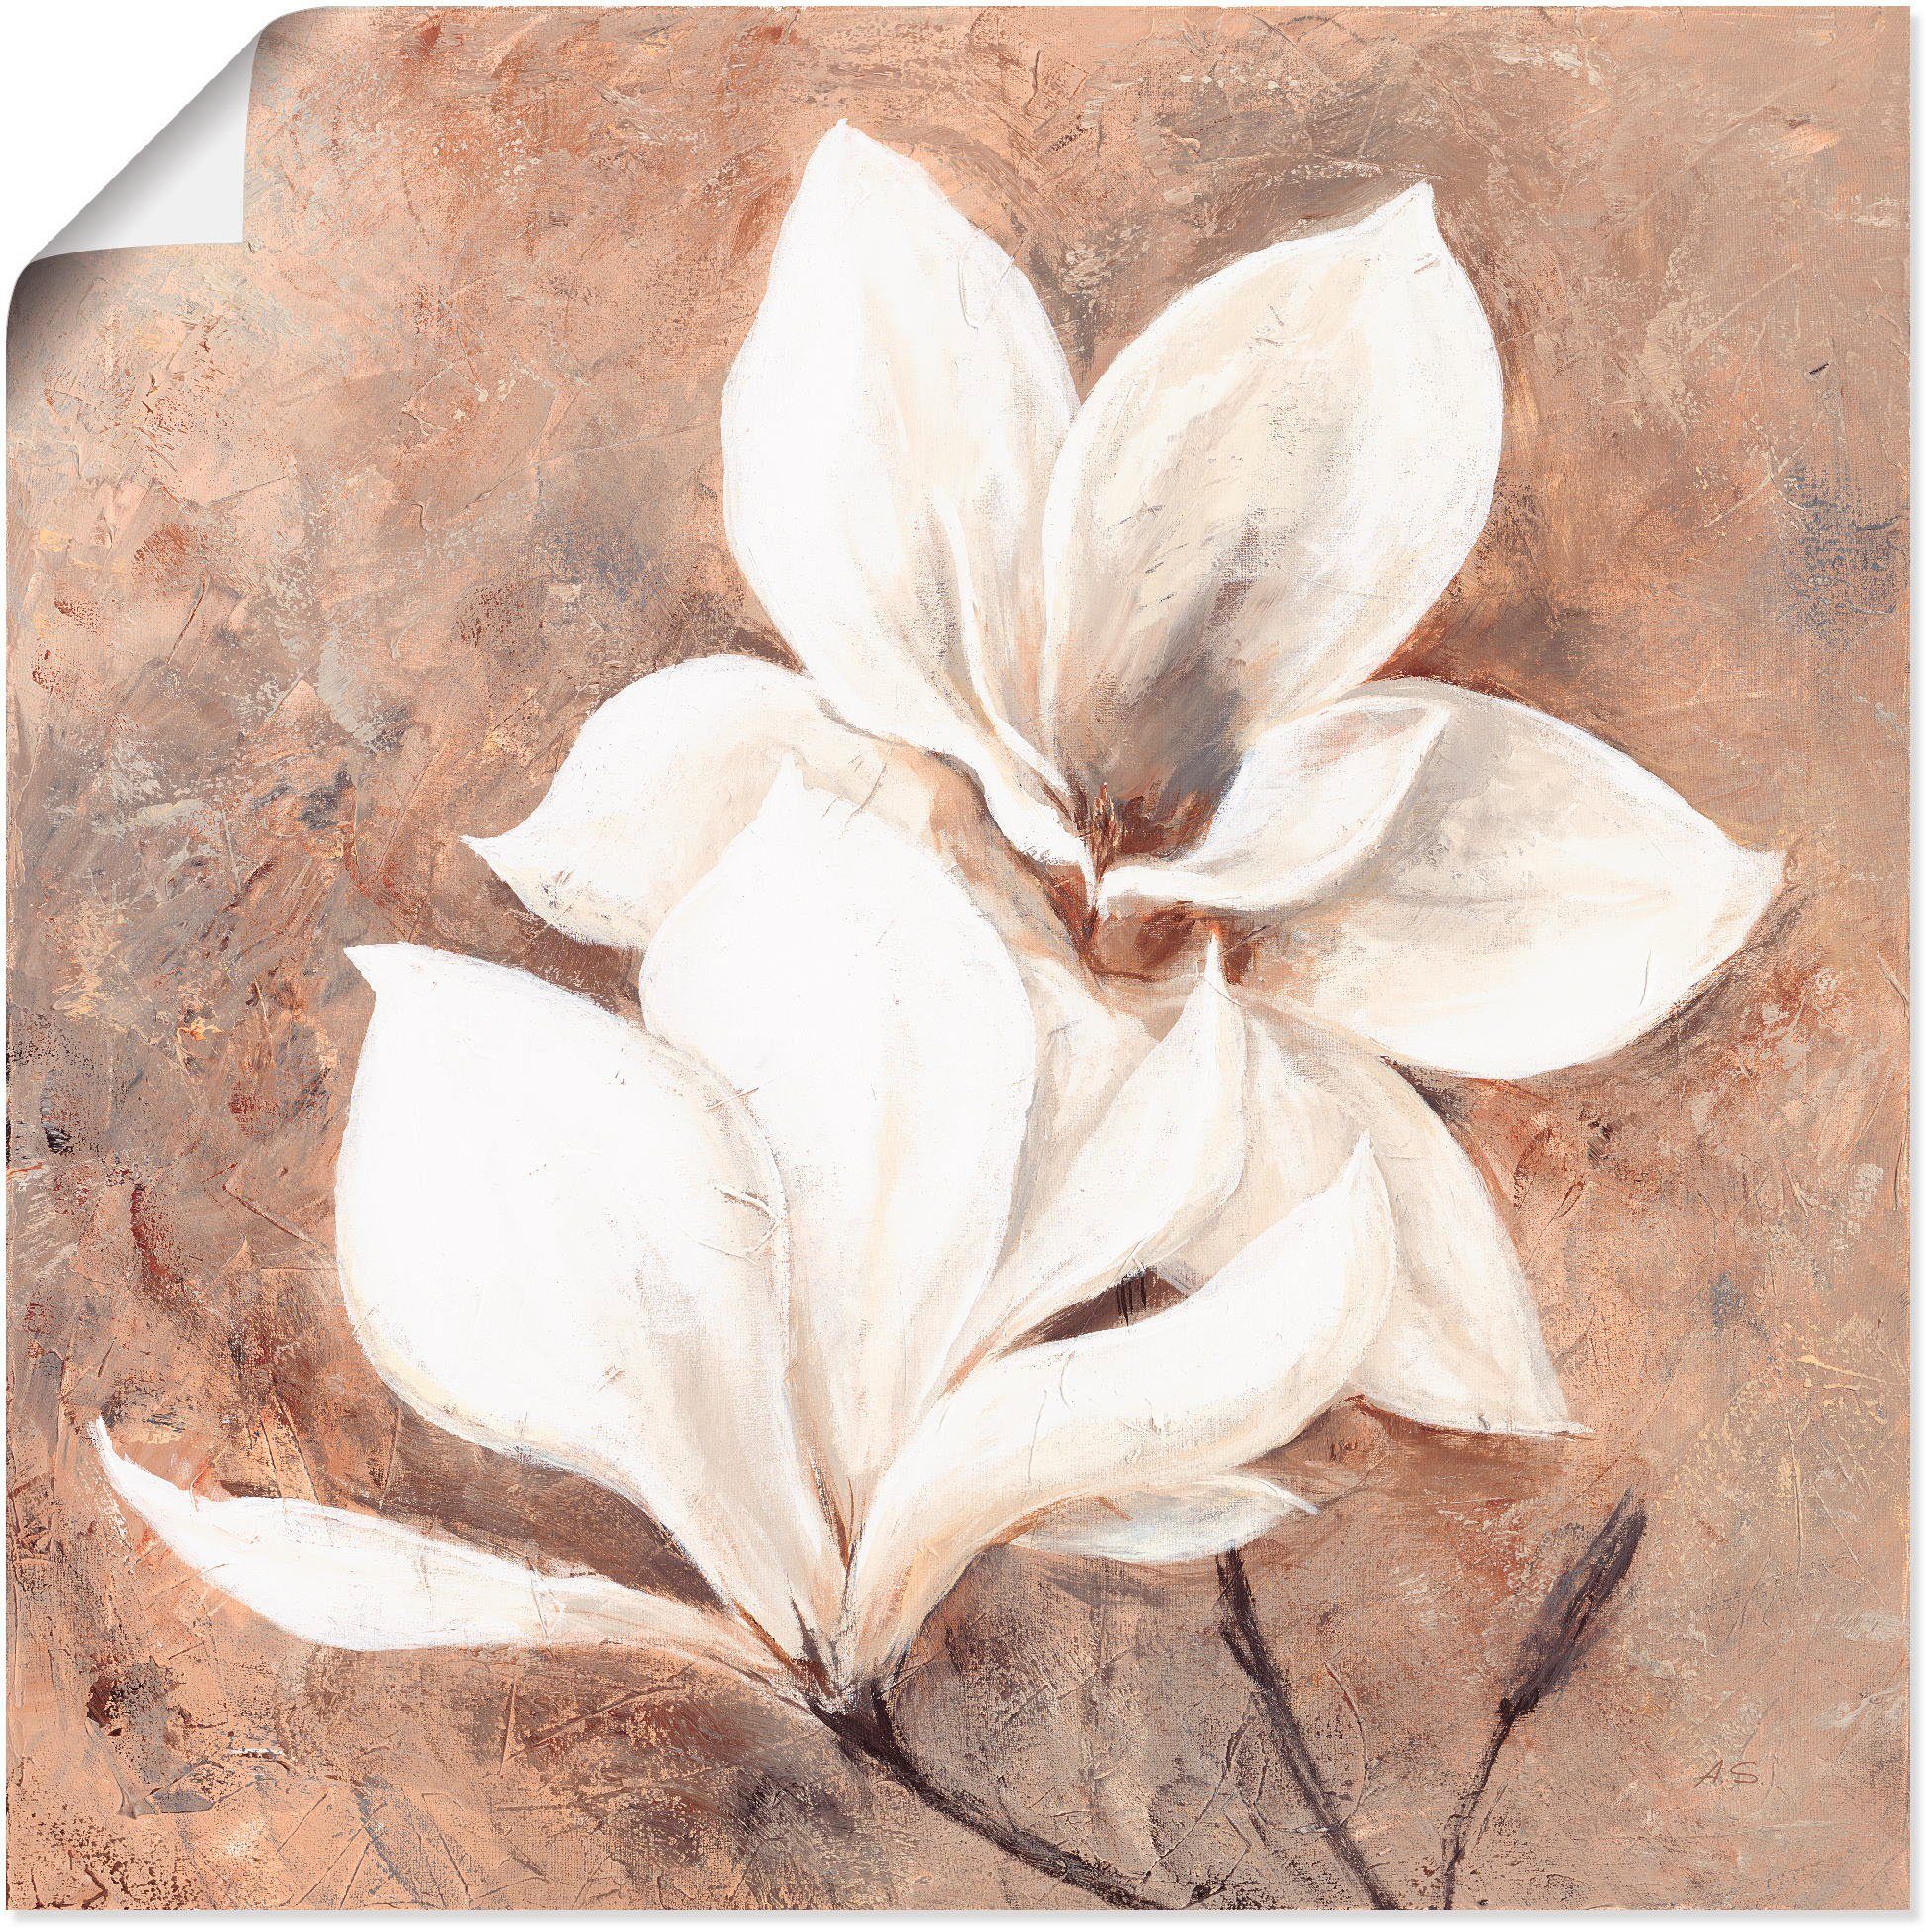 Artland Artprint Klassieke magnolia's in vele afmetingen & productsoorten - artprint van aluminium / artprint voor buiten, artprint op linnen, poster, muursticker / wandfolie ook g